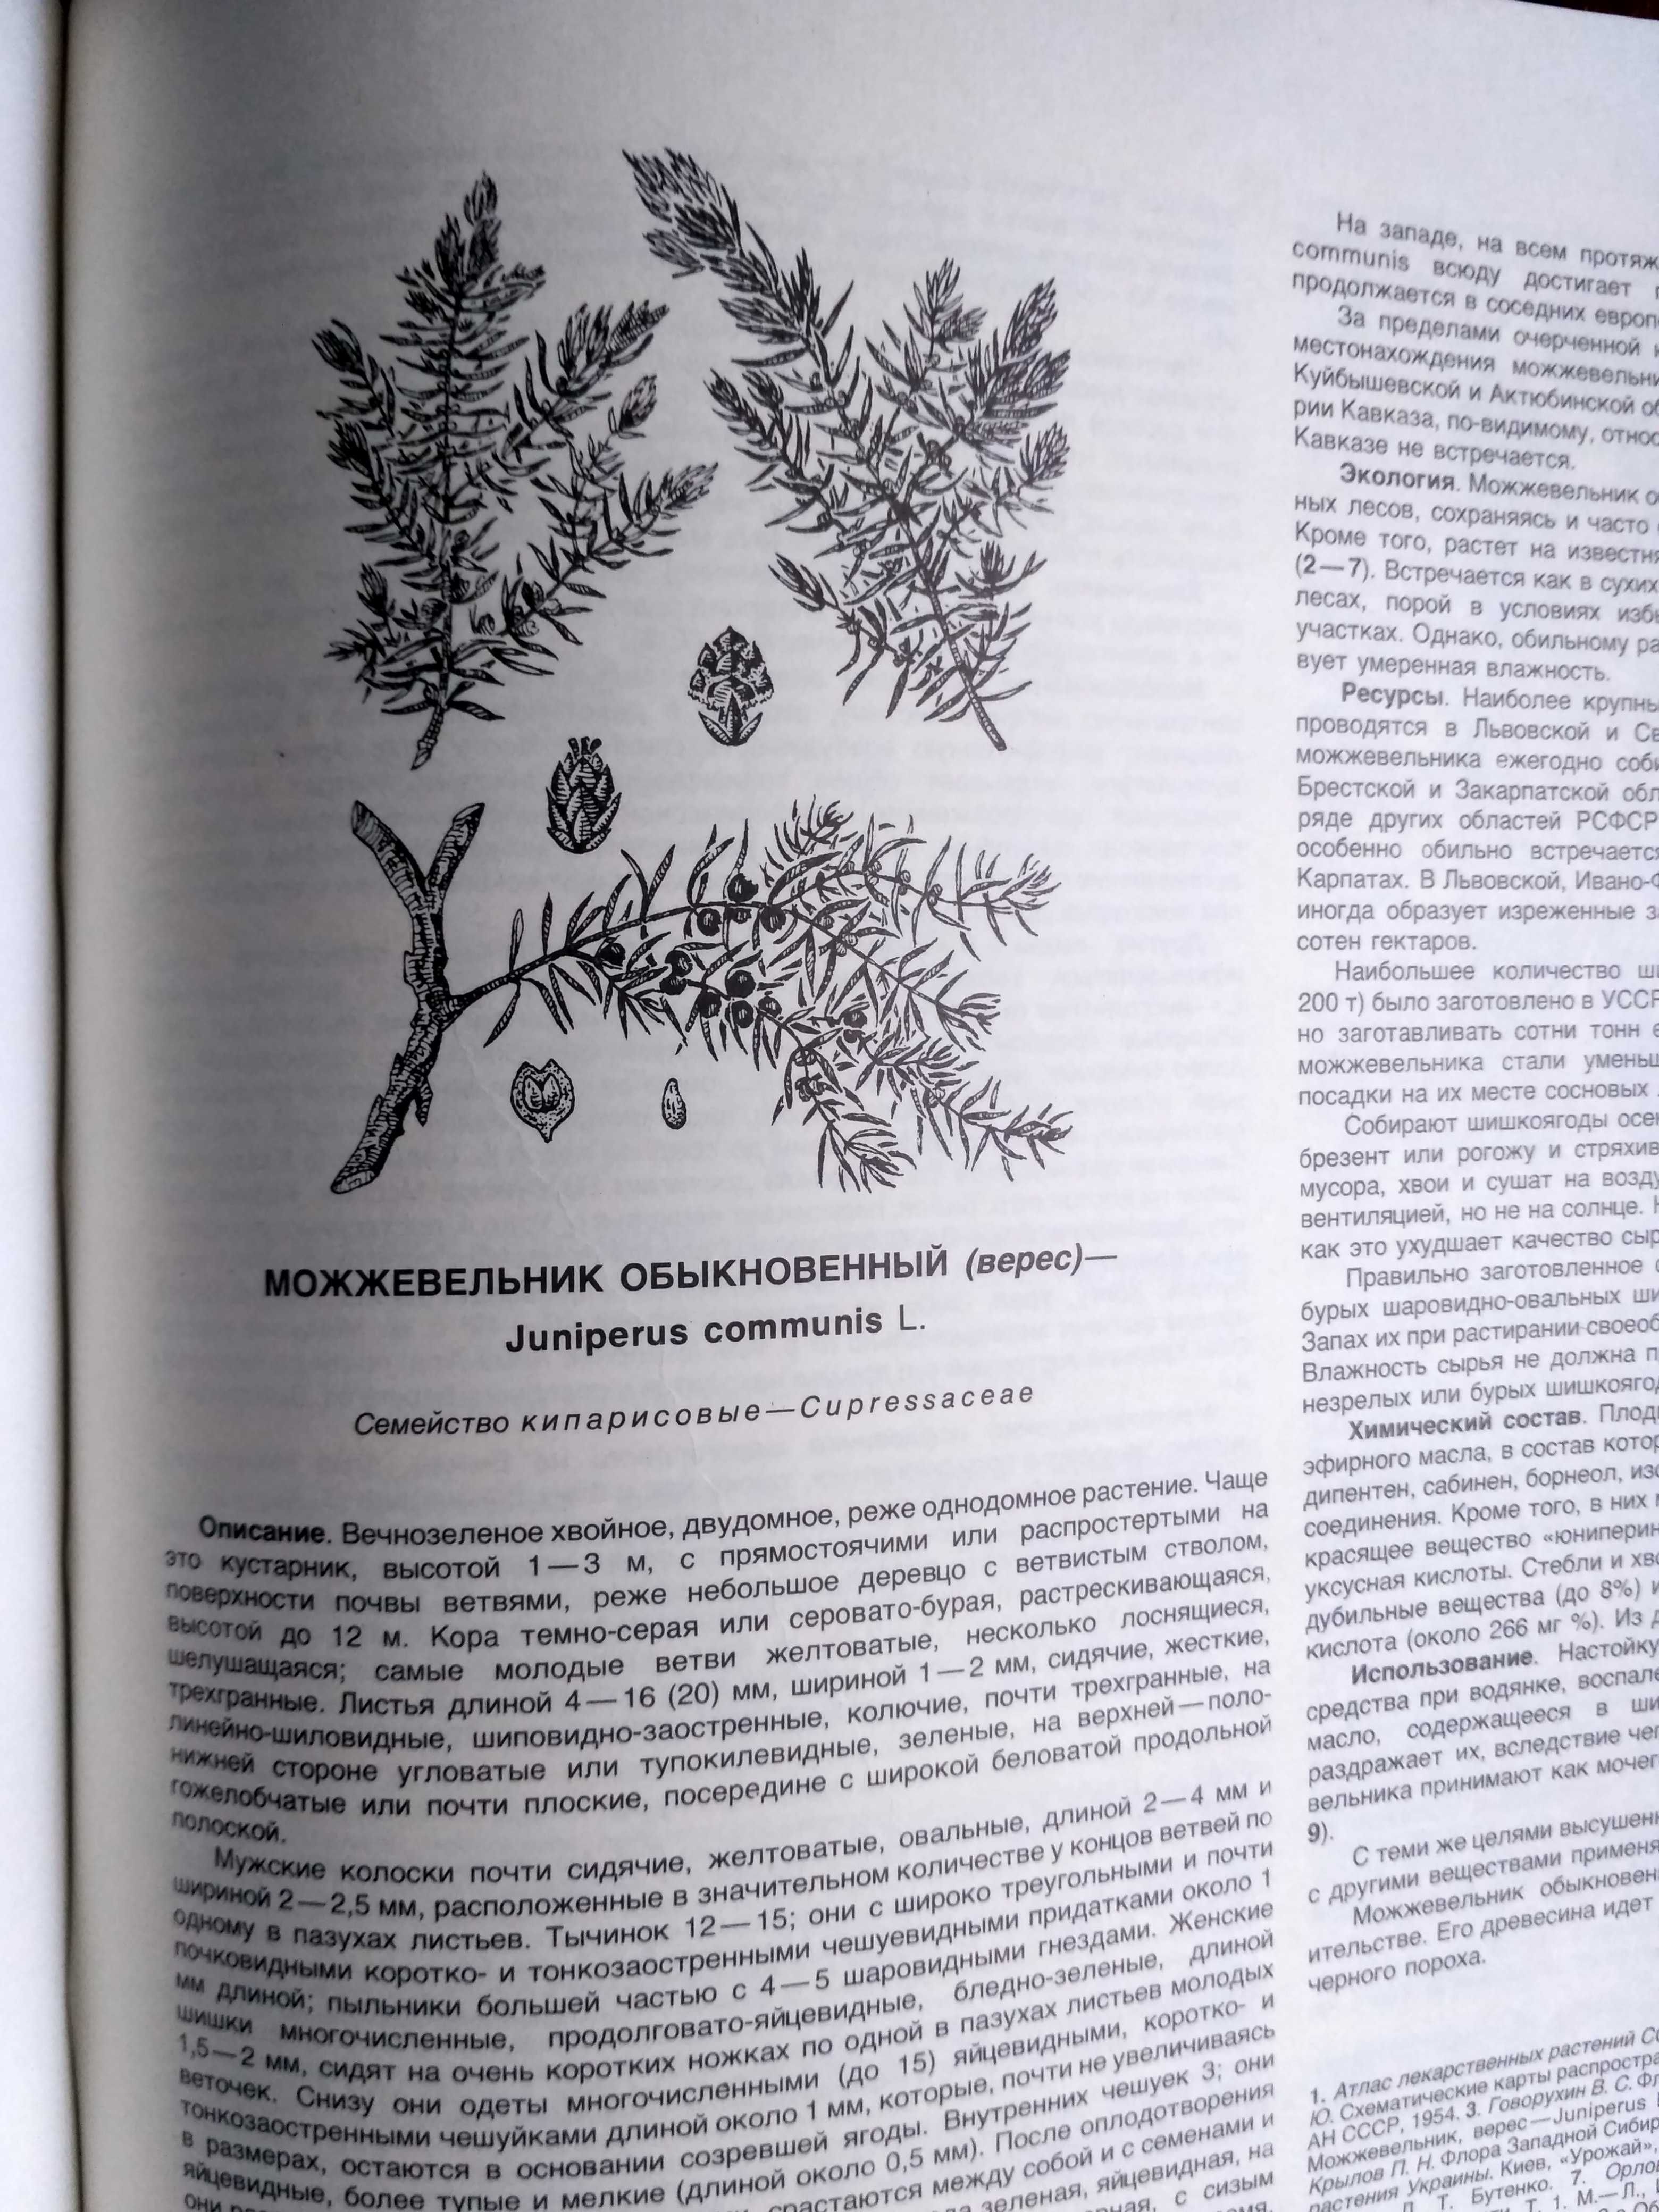 Атлас ареалов и ресурсов лекарственных растений СССР 39*29см